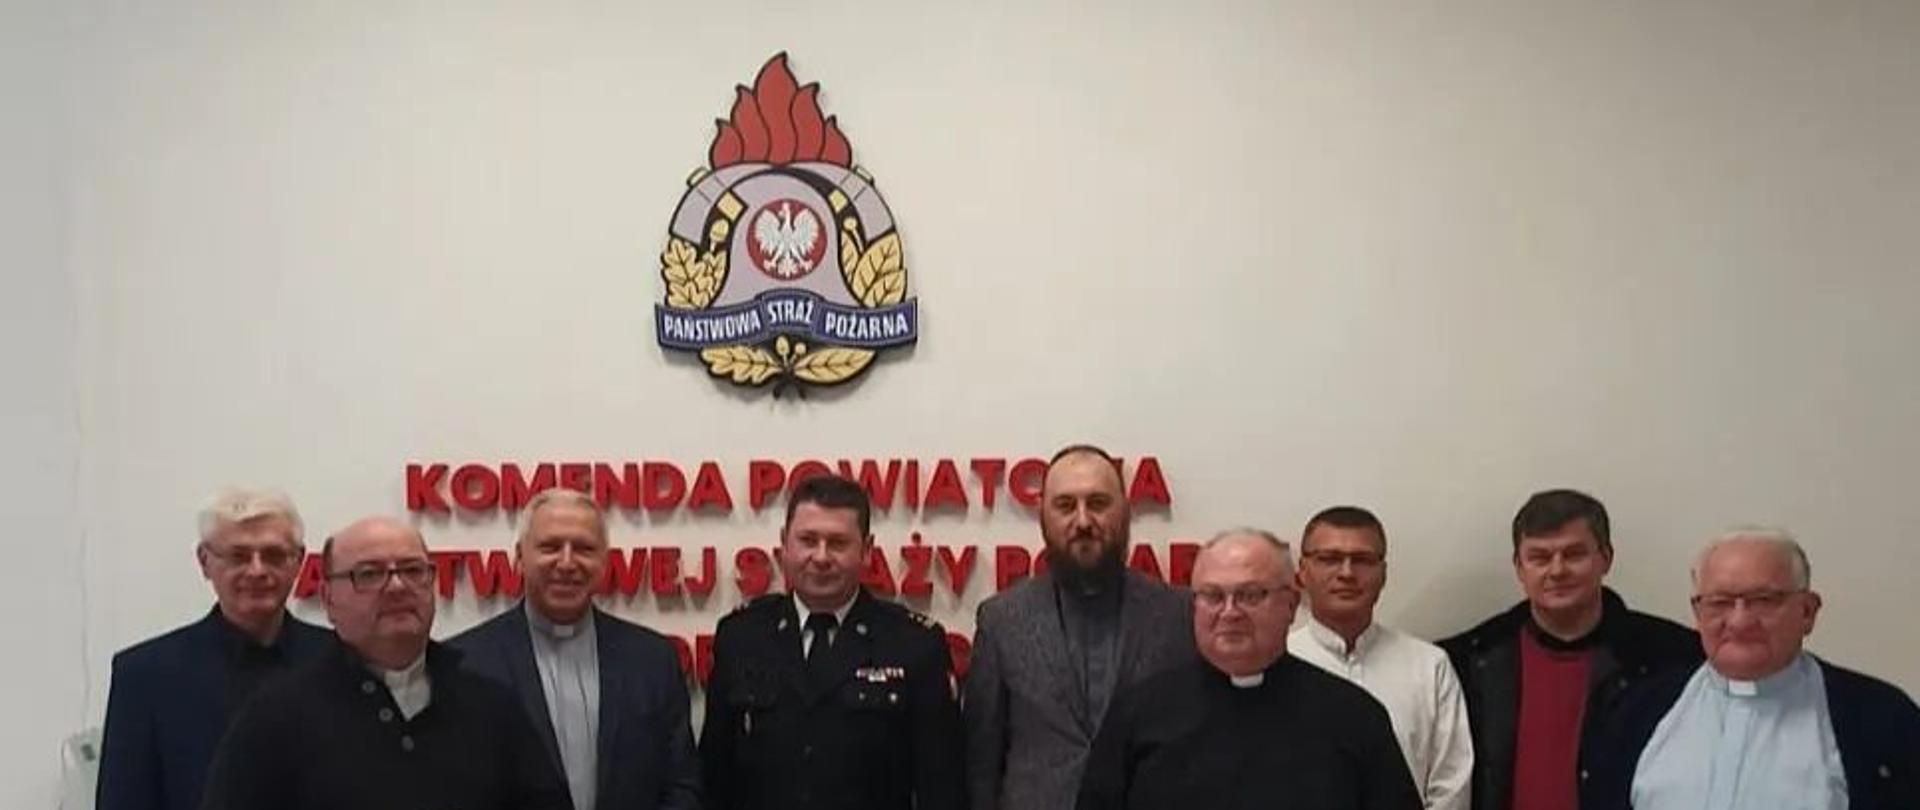 Na zdjęciu Komendant Powiatowy PSP w Gryficach wraz z księżmi z parafii powiatu gryfickiego